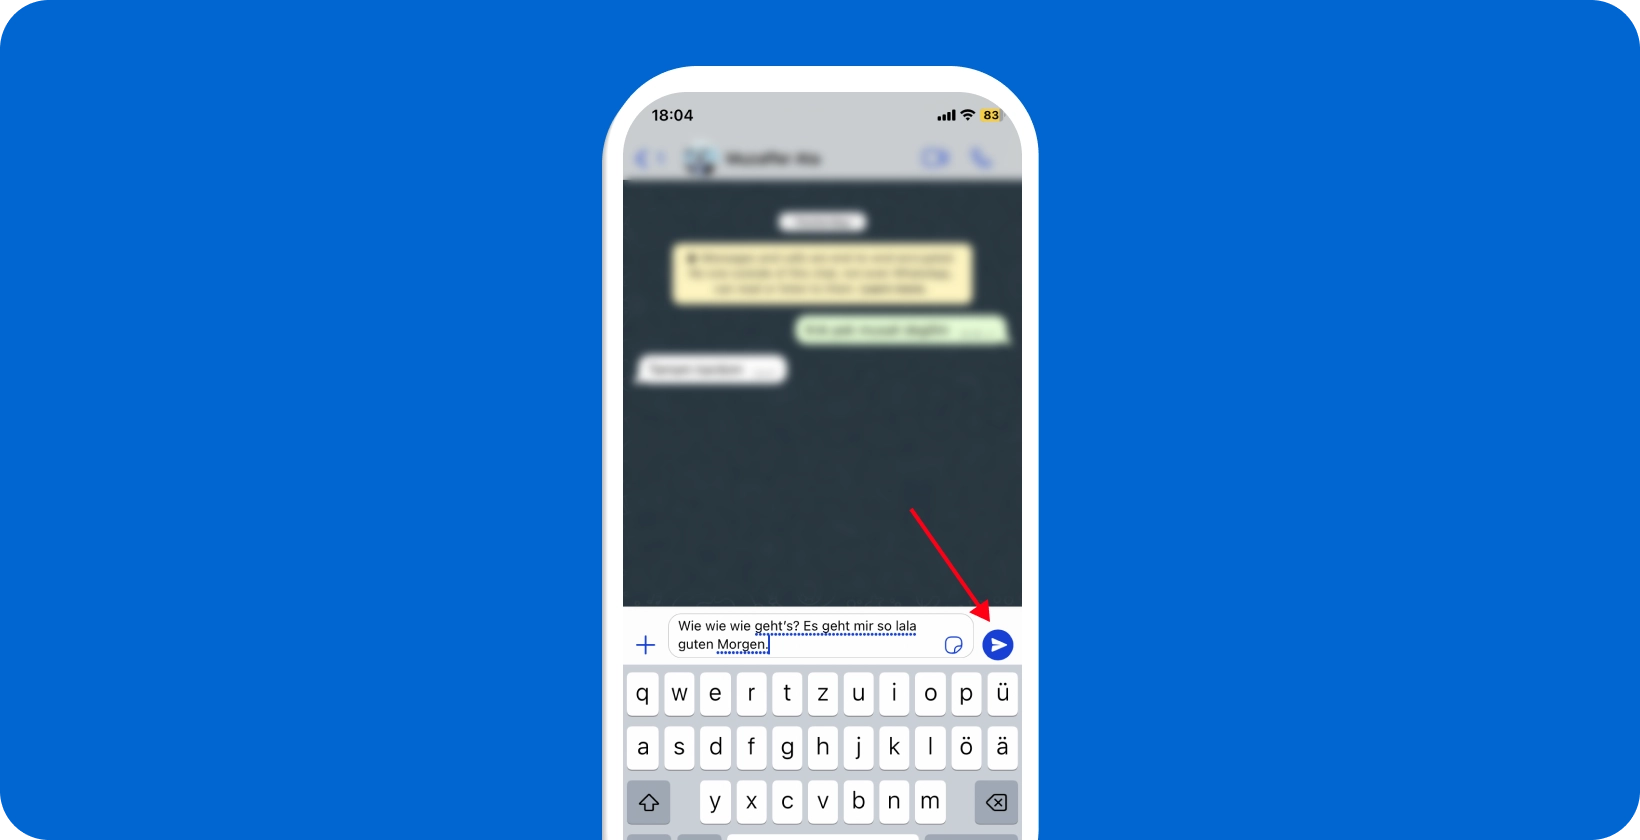 사용 중인 WhatsApp 음성 받아쓰기 기능을 보여주는 스마트폰 화면(마이크 아이콘이 강조 표시됨).